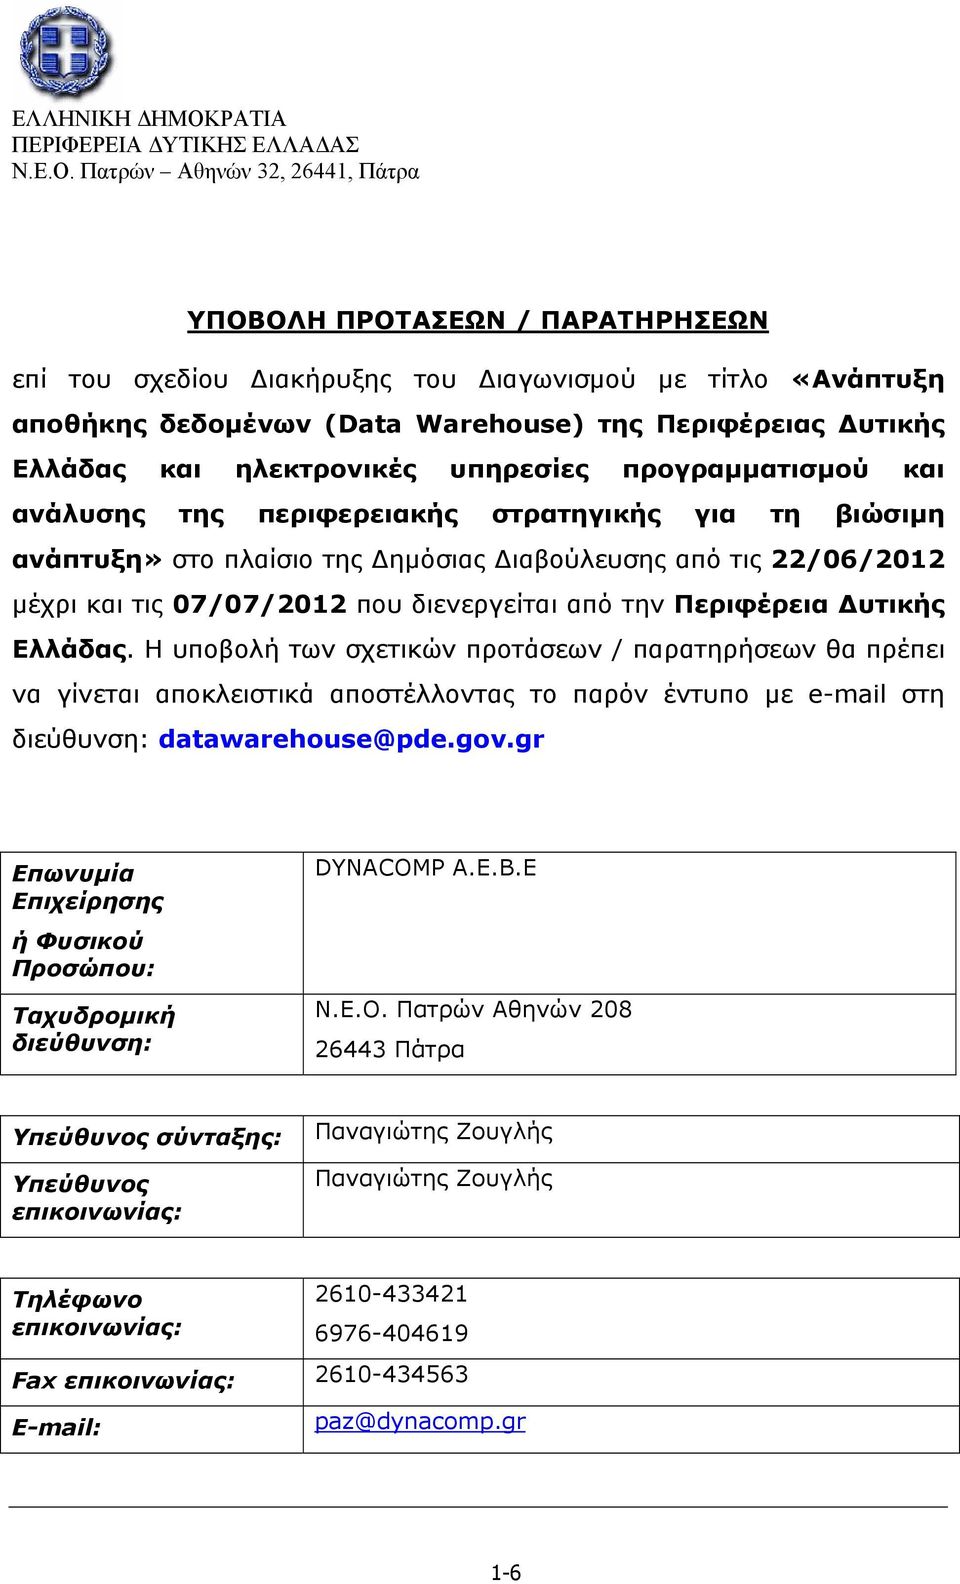 Περιφέρεια Δυτικής Ελλάδας. H υποβολή των σχετικών προτάσεων / παρατηρήσεων θα πρέπει να γίνεται αποκλειστικά αποστέλλοντας το παρόν έντυπο με e-mail στη διεύθυνση: datawarehouse@pde.gov.